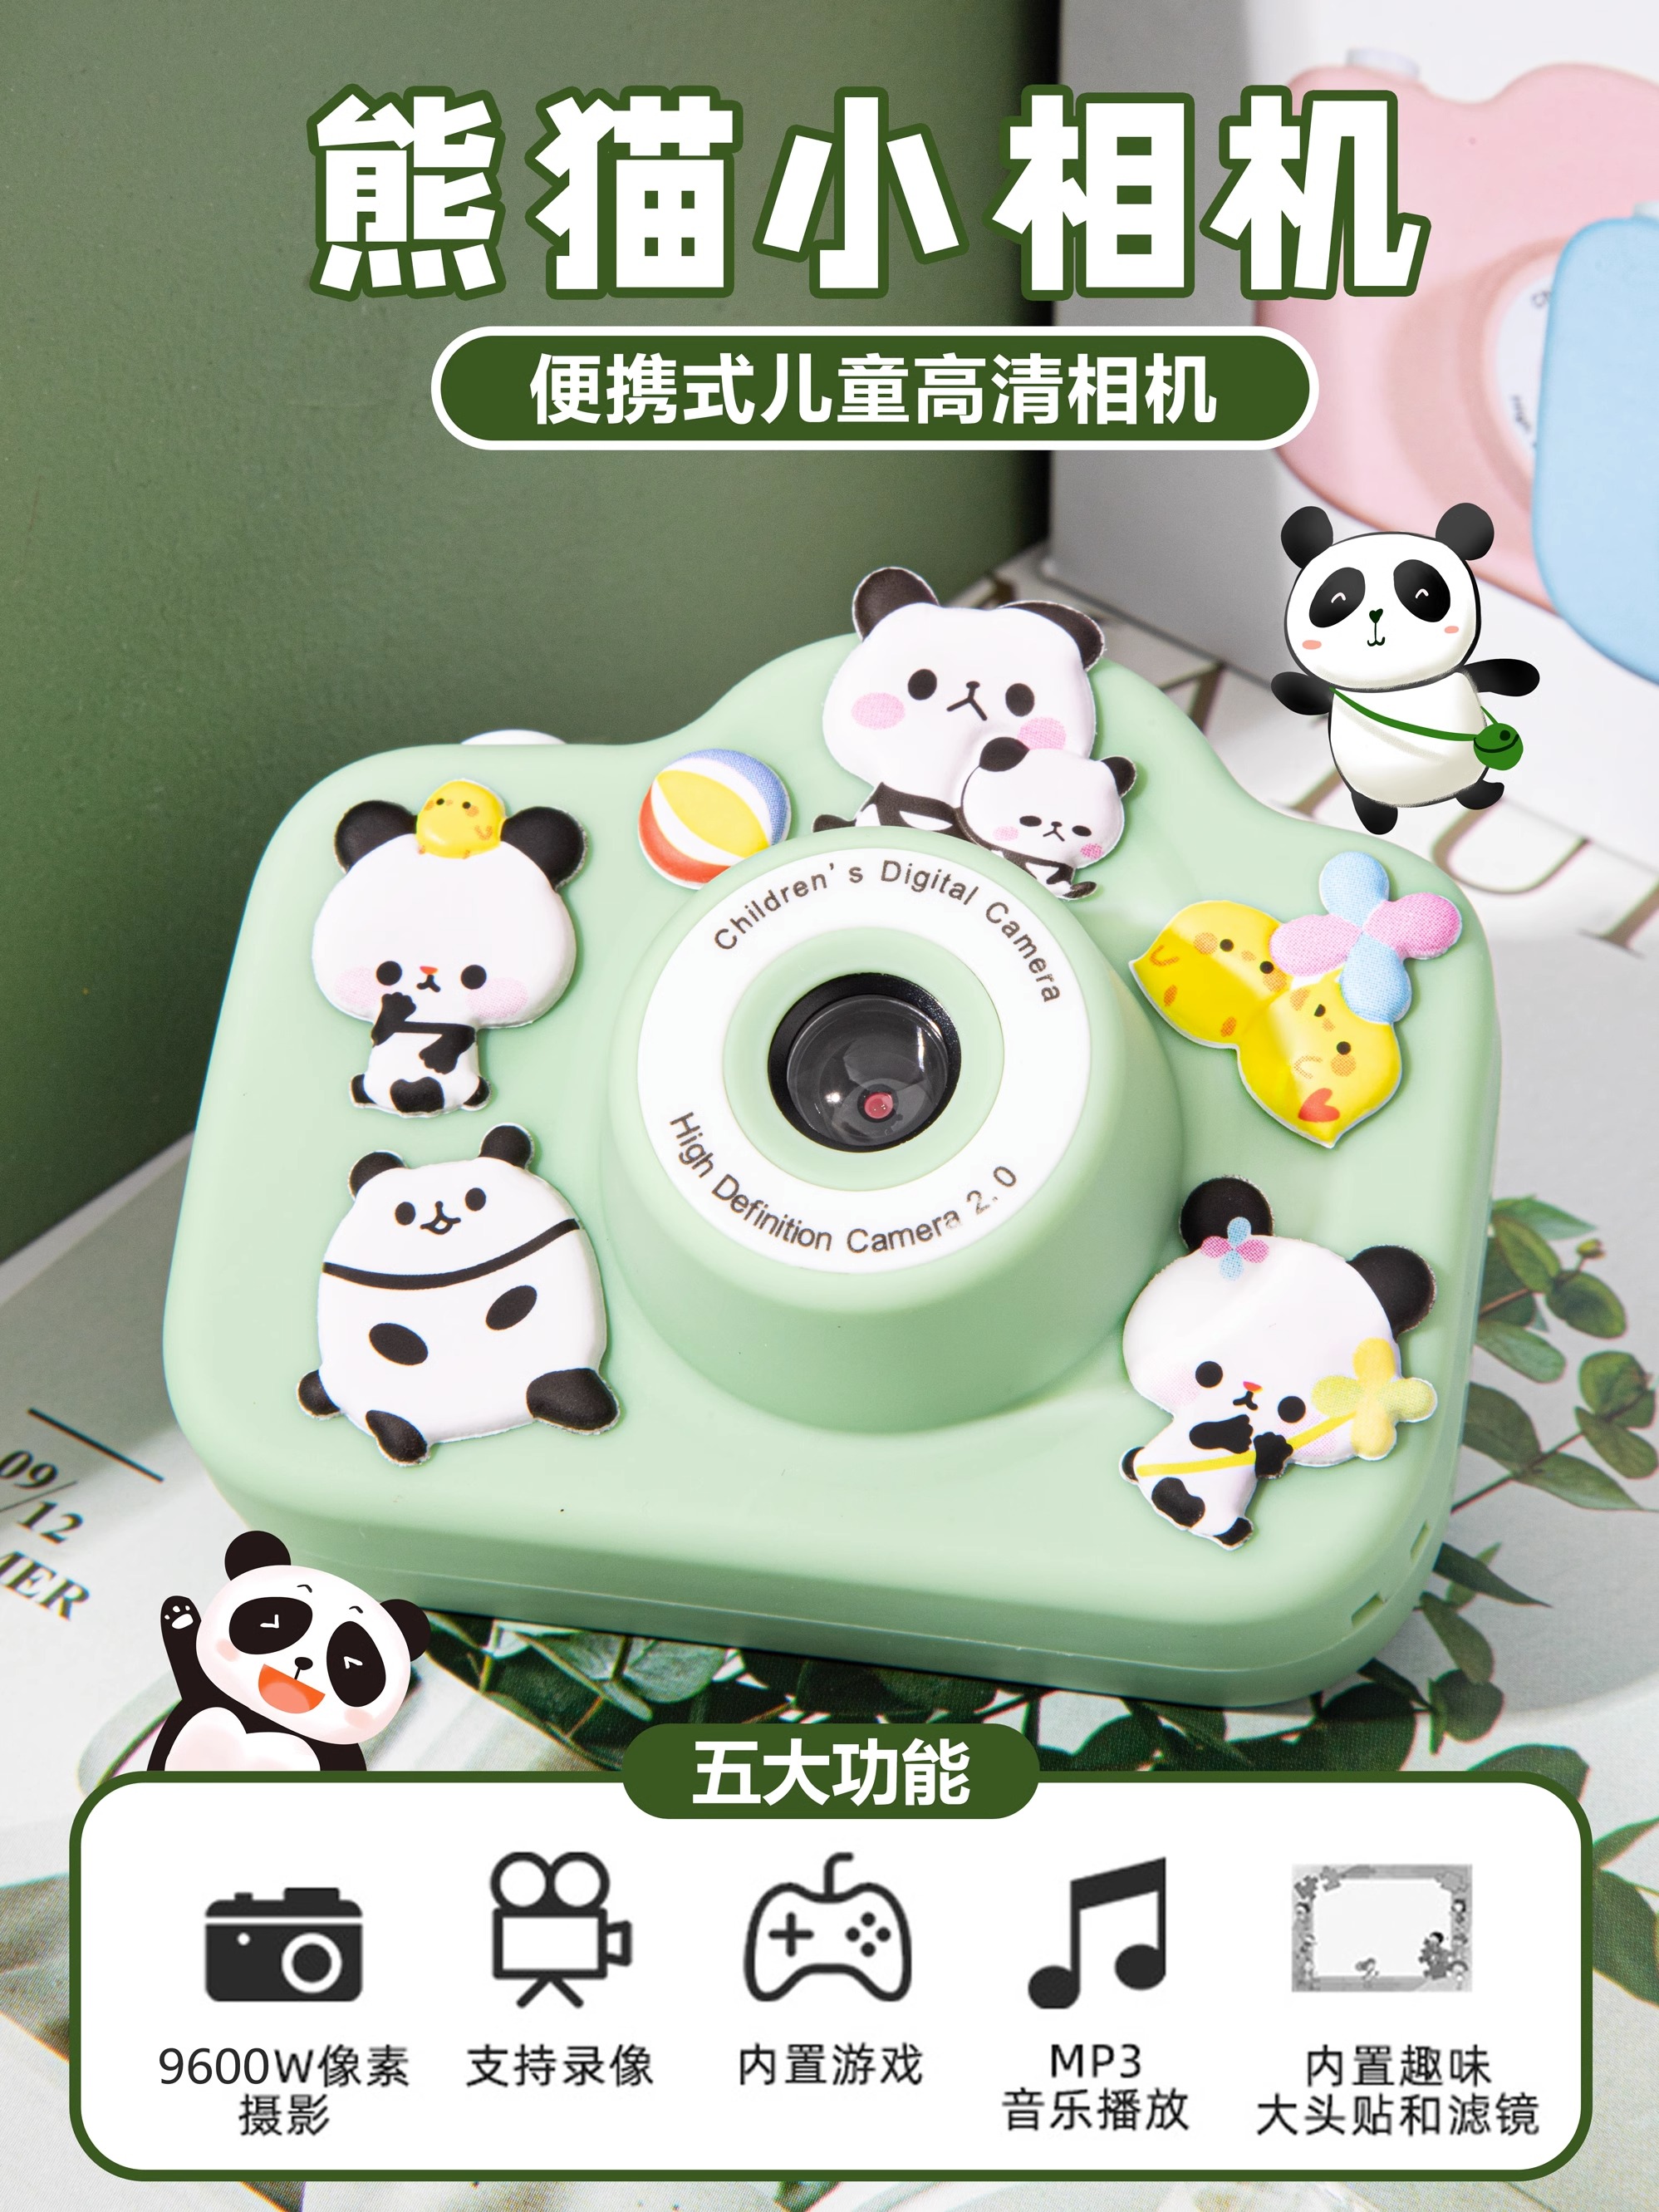 新款儿童相机可拍照可打印彩色照片迷你数码照相机高像素熊猫礼物